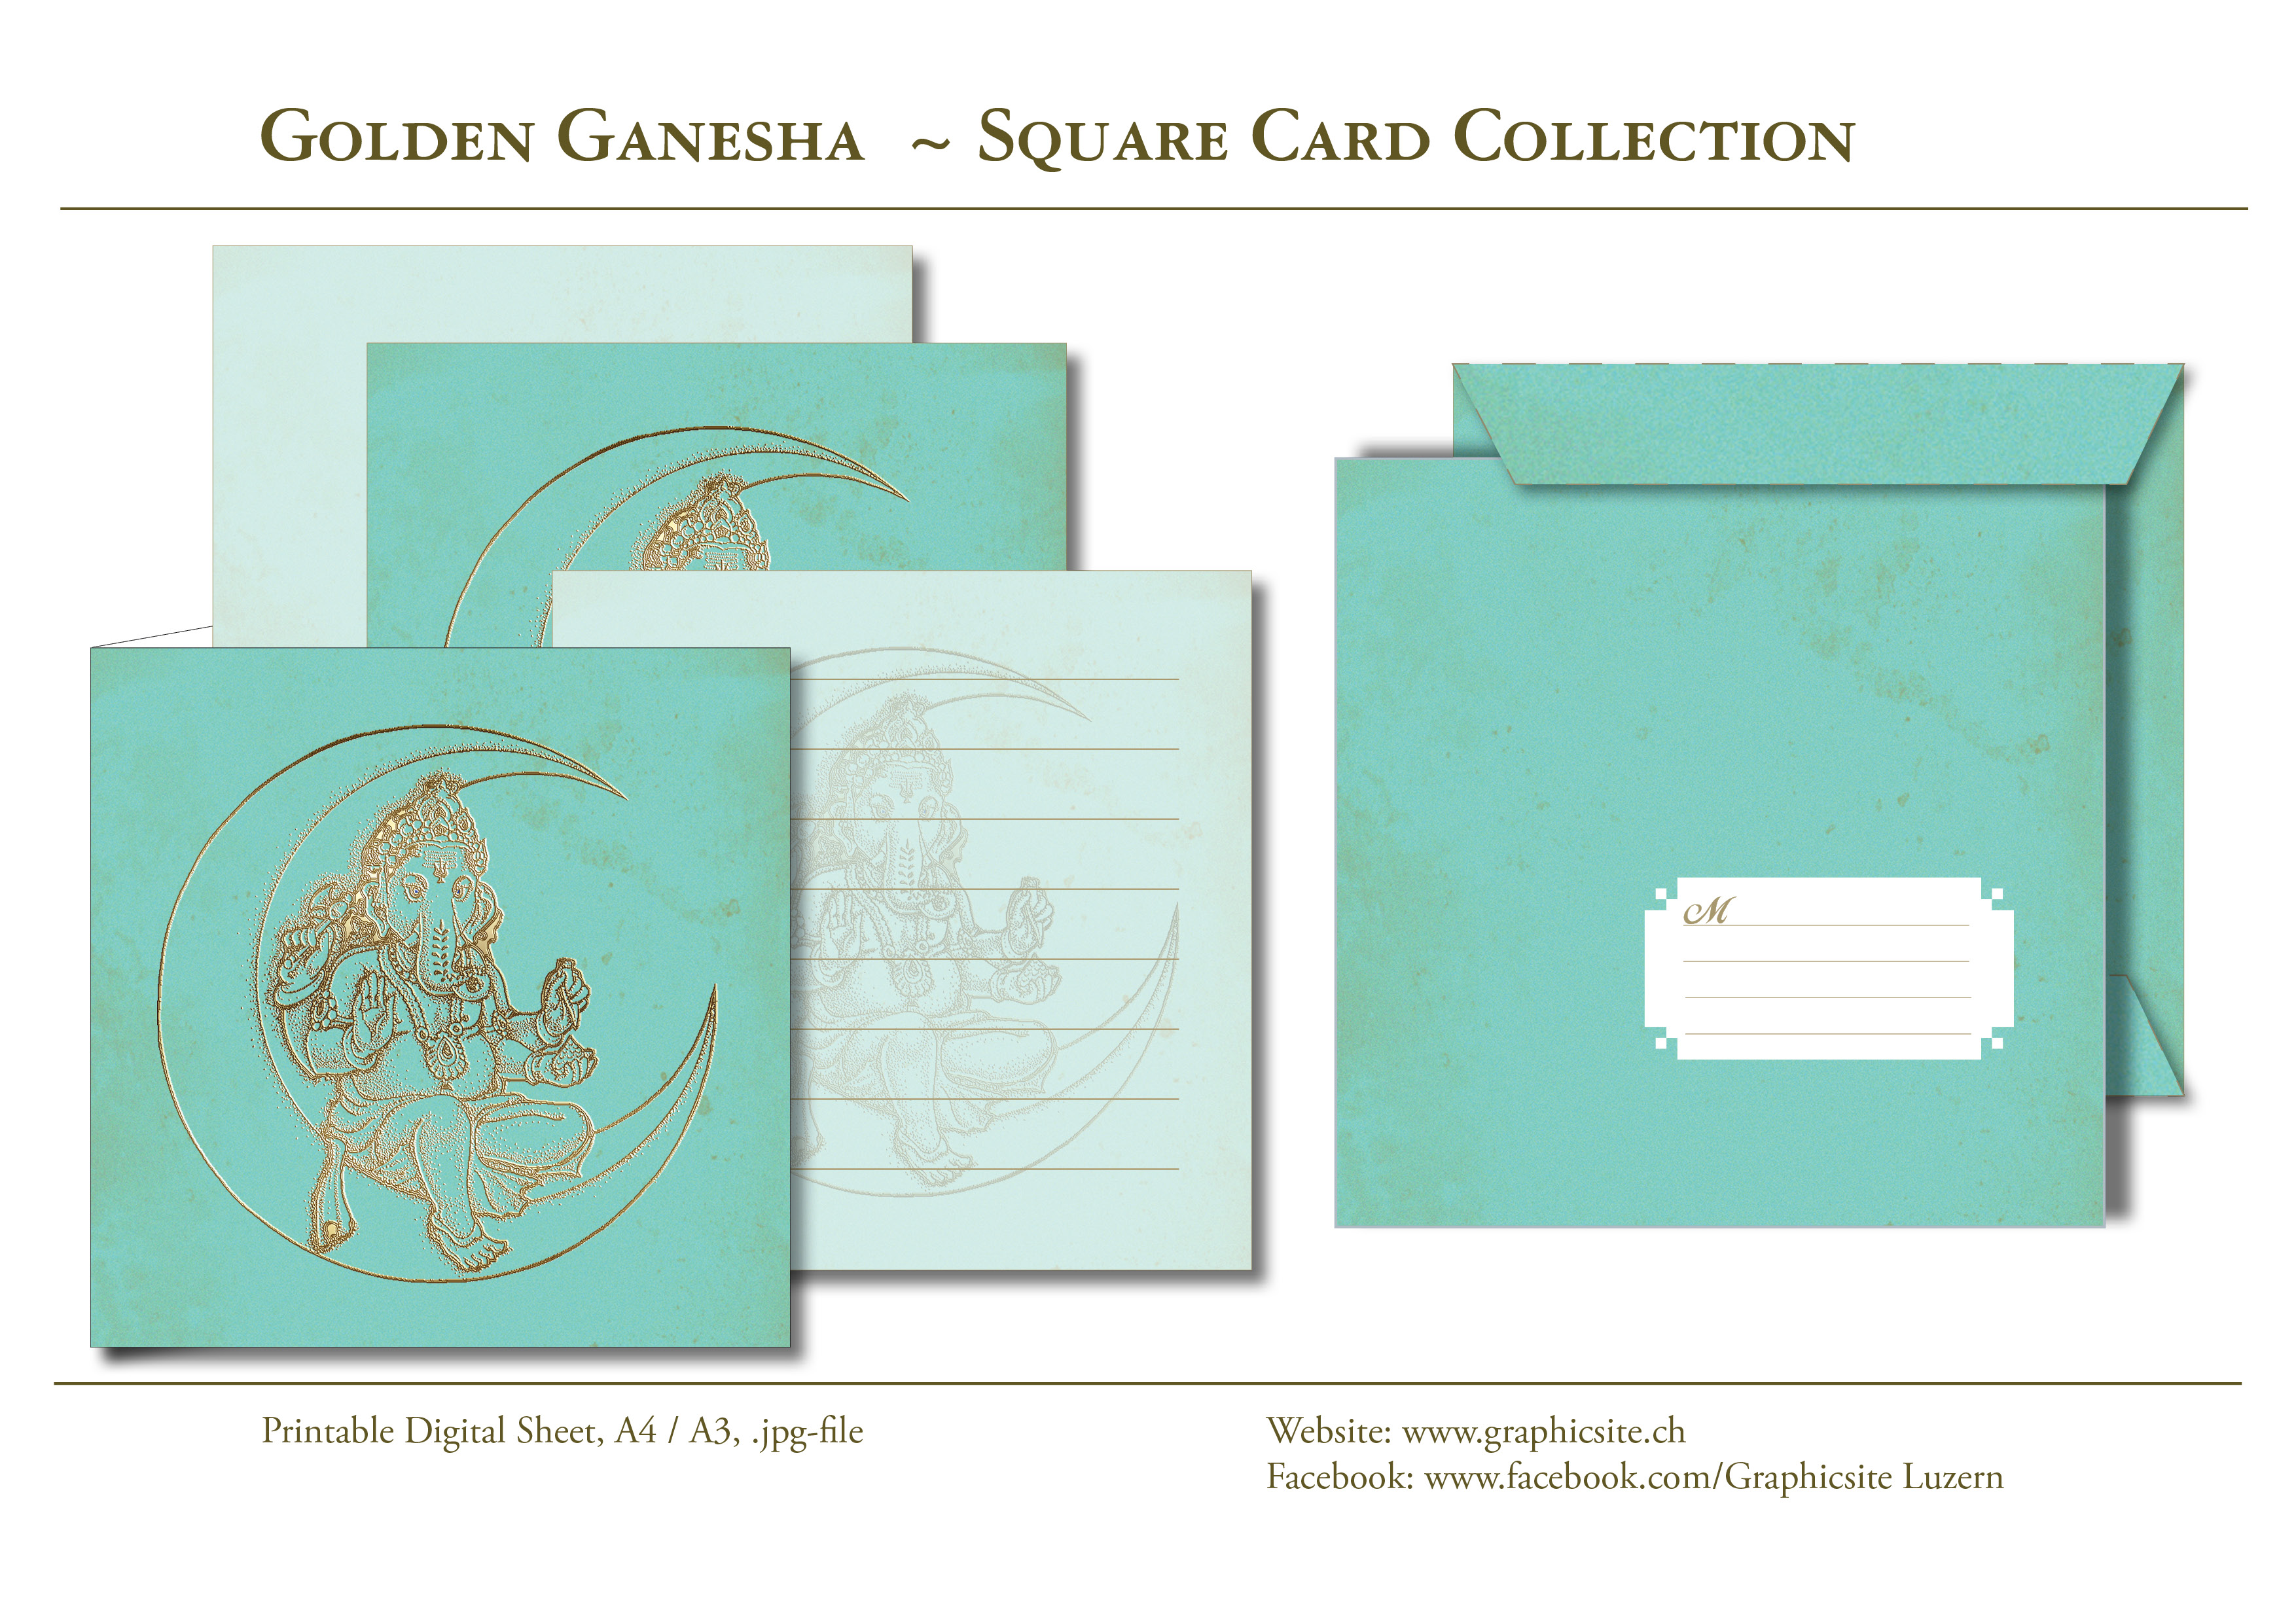 GoldenGanesha - Tuerkis - Kartenkollektion - Kuvert, Indien,  Yoga, Meditation, druckbare Karten, download, Graphic Design Luzern, Grafiker Luzern, Schweiz